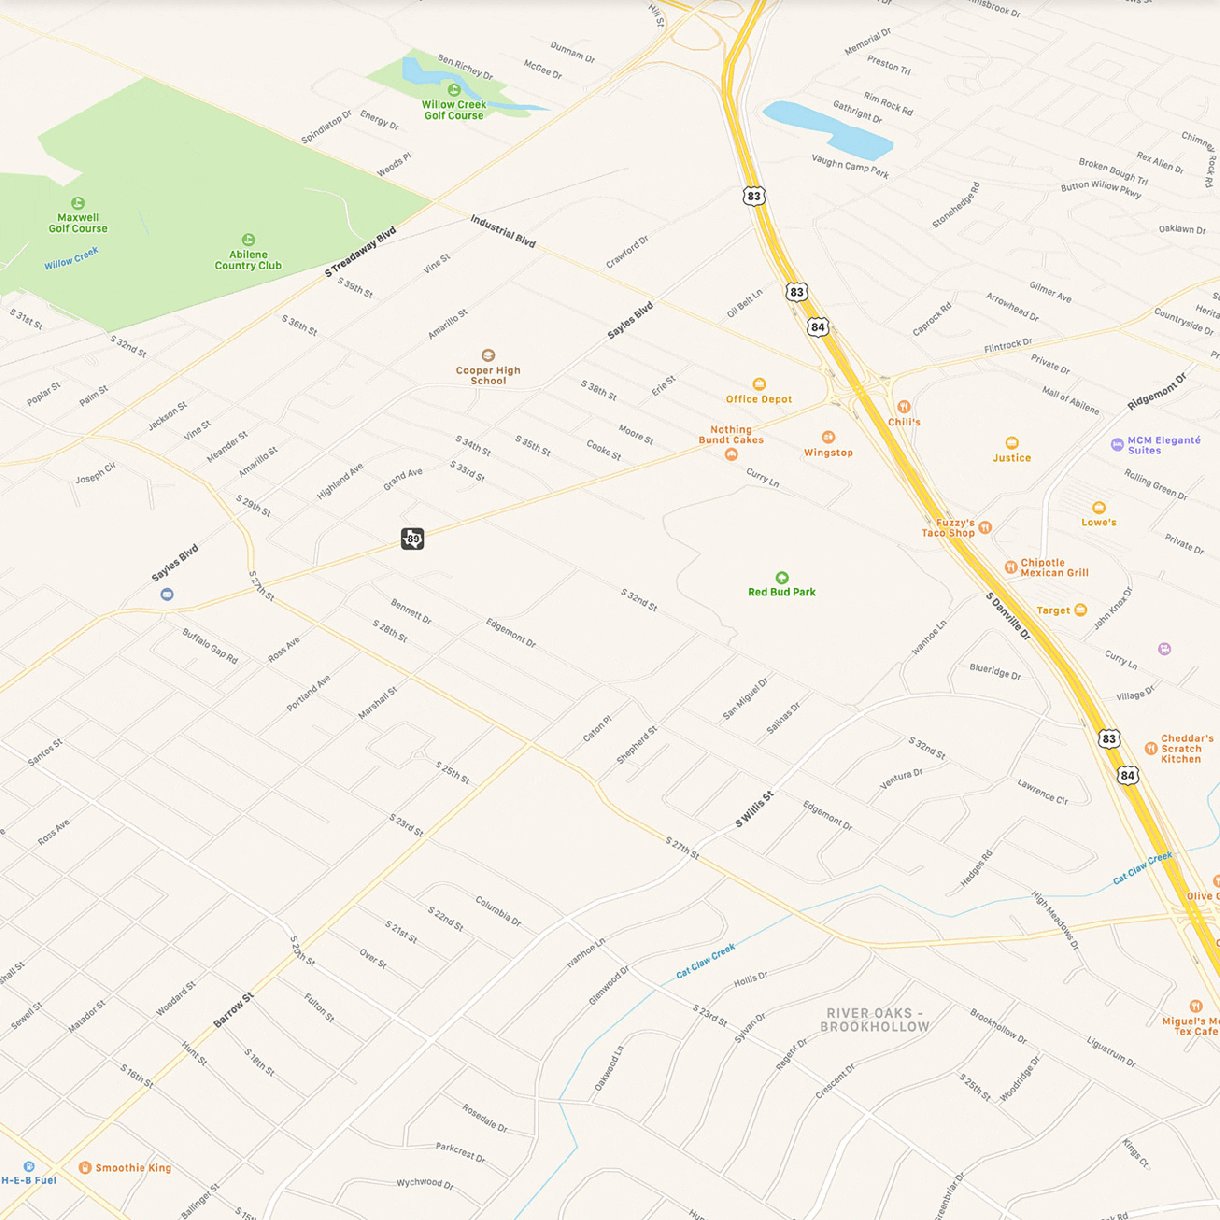 Contoh perubahan pada aplikasi Maps Apple